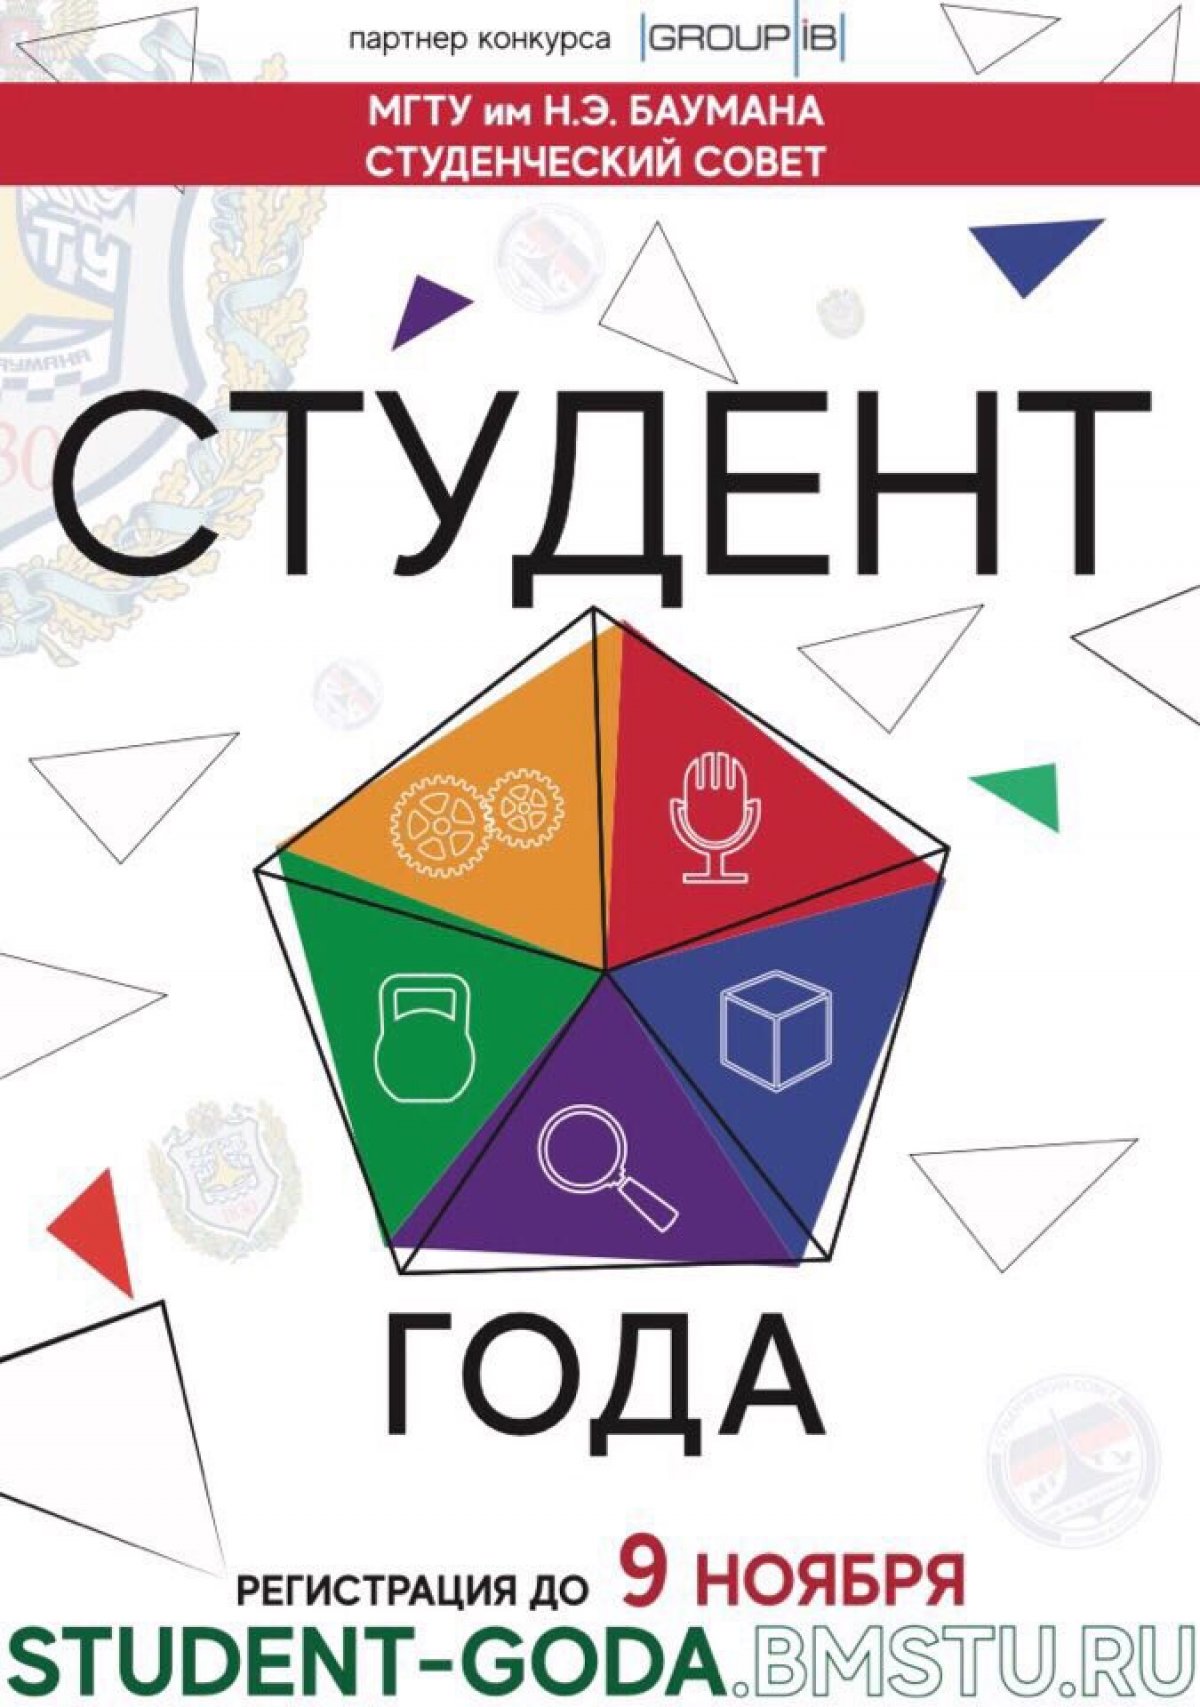 8 октября стартовал прием заявок на конкурс «Студент Года 2018», главный приз: стипендия 35000 руб./месяц в течении года! @bmstu1830